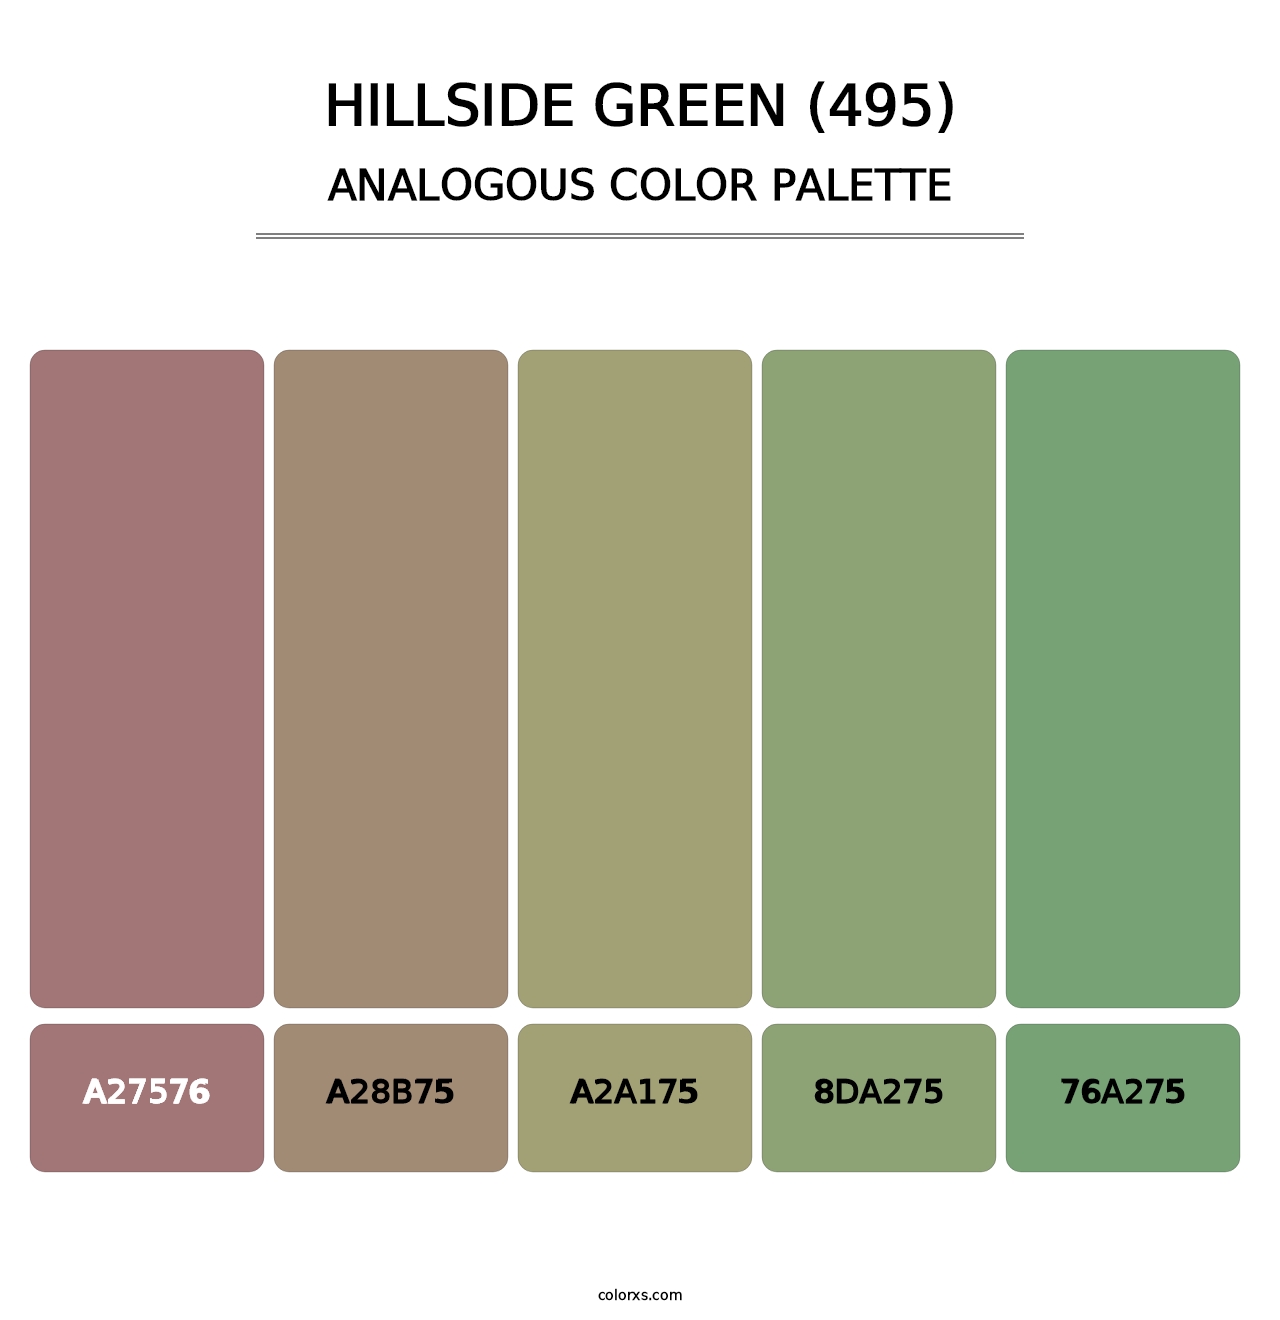 Hillside Green (495) - Analogous Color Palette